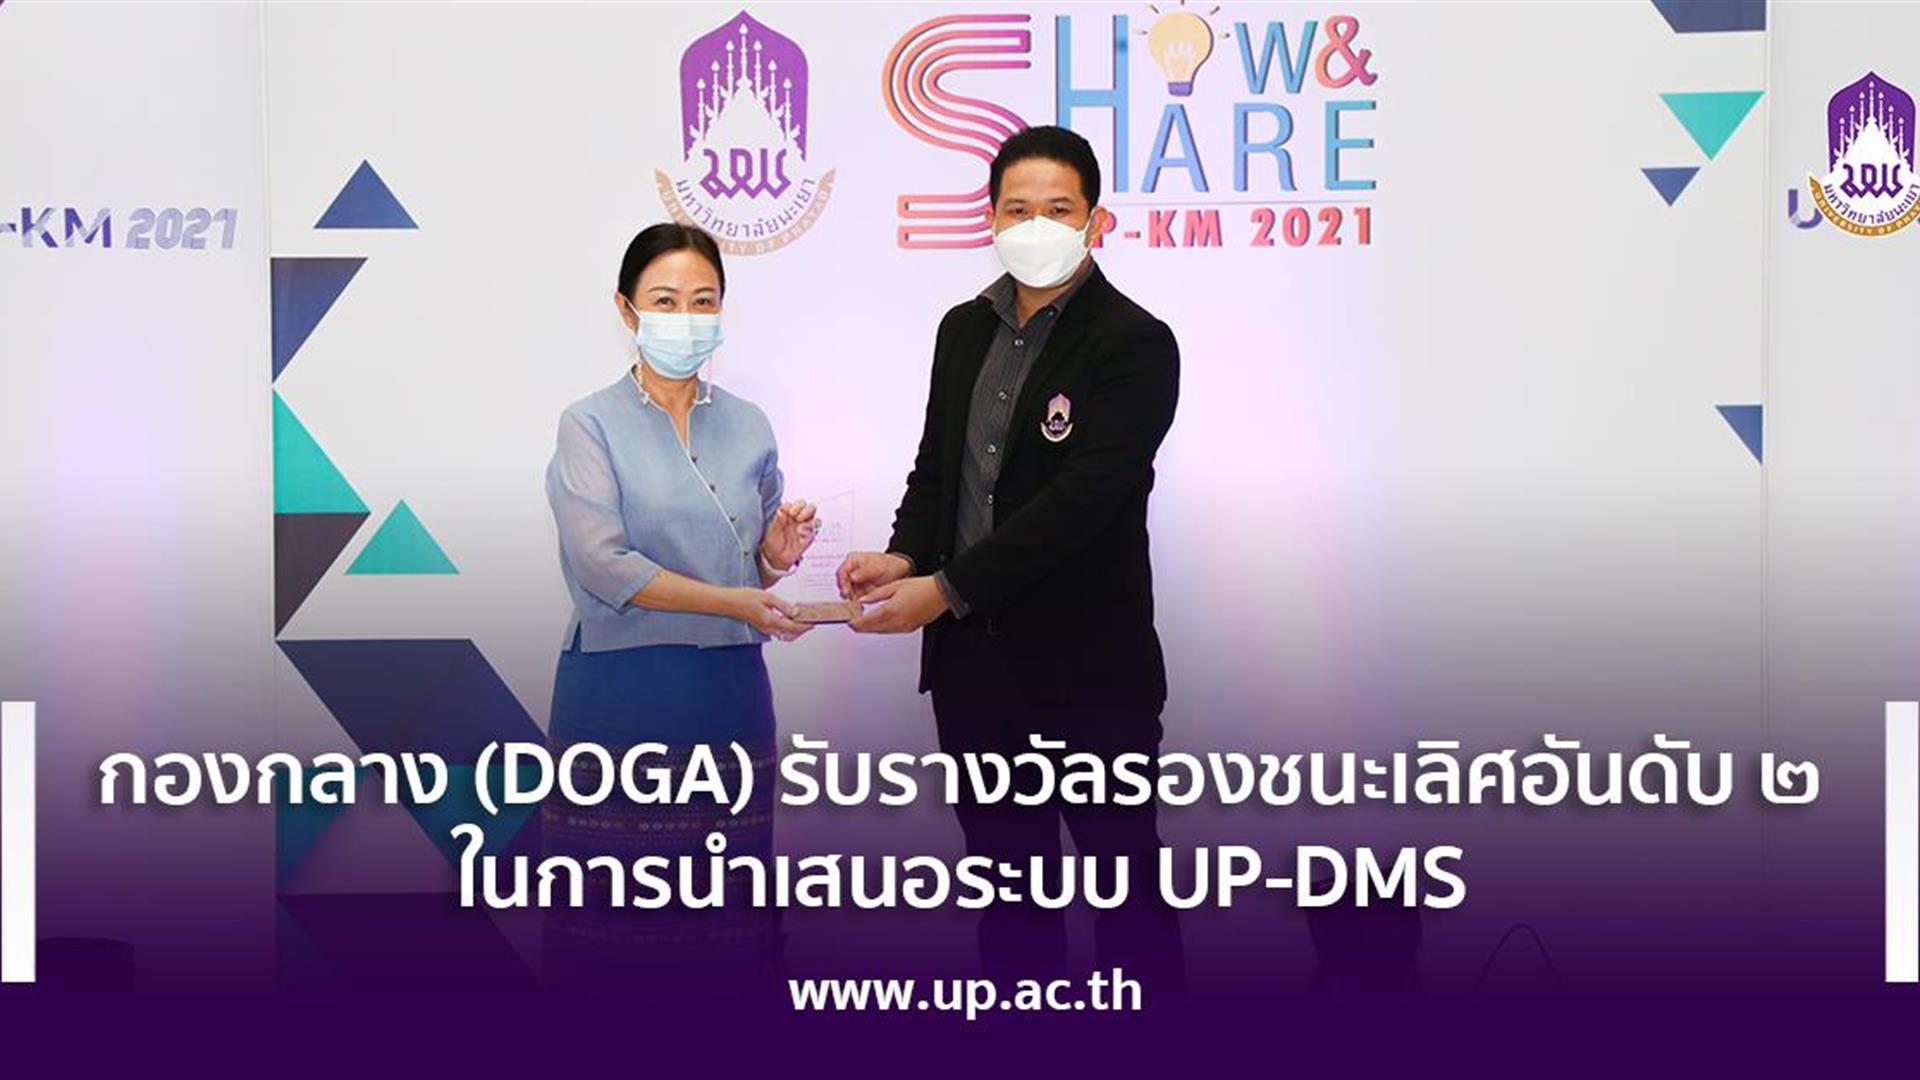 กองกลาง (DOGA) รับรางวัลรองชนะเลิศอันดับ 2 ในการนำเสนอระบบ UP-DMS